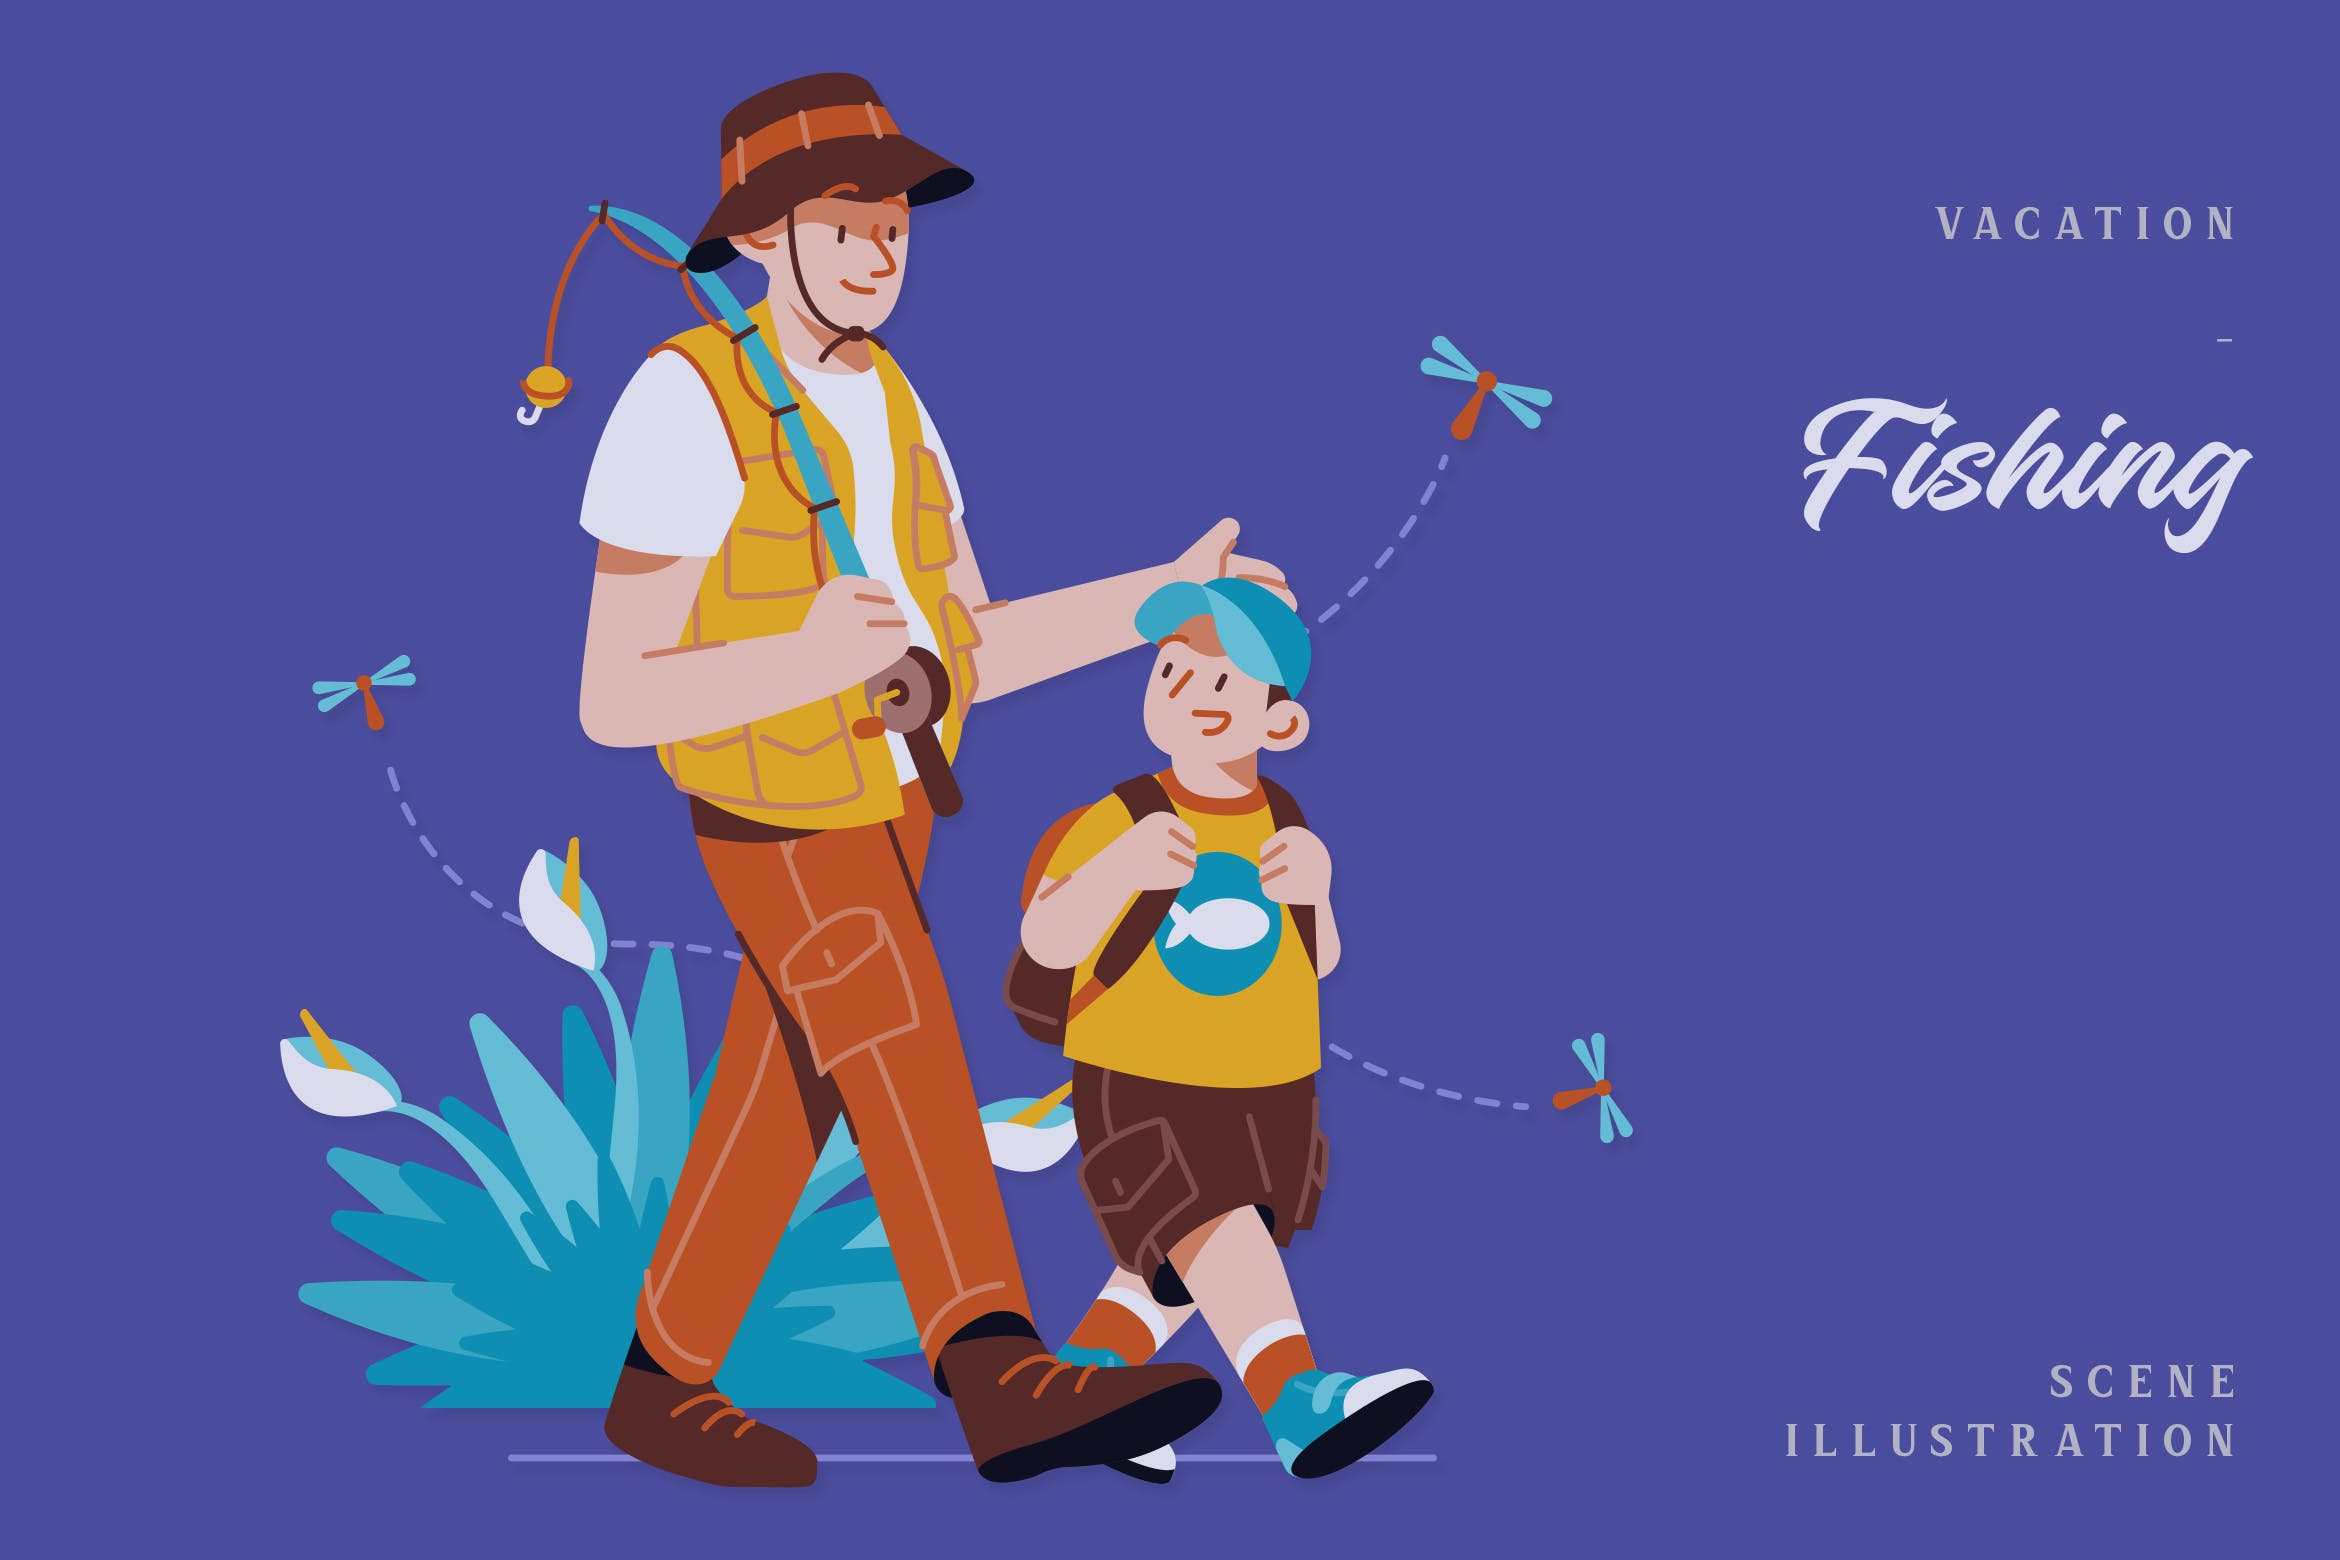 假期钓鱼场景插画矢量素材 Vacation – Fishing Scene Illustration-1